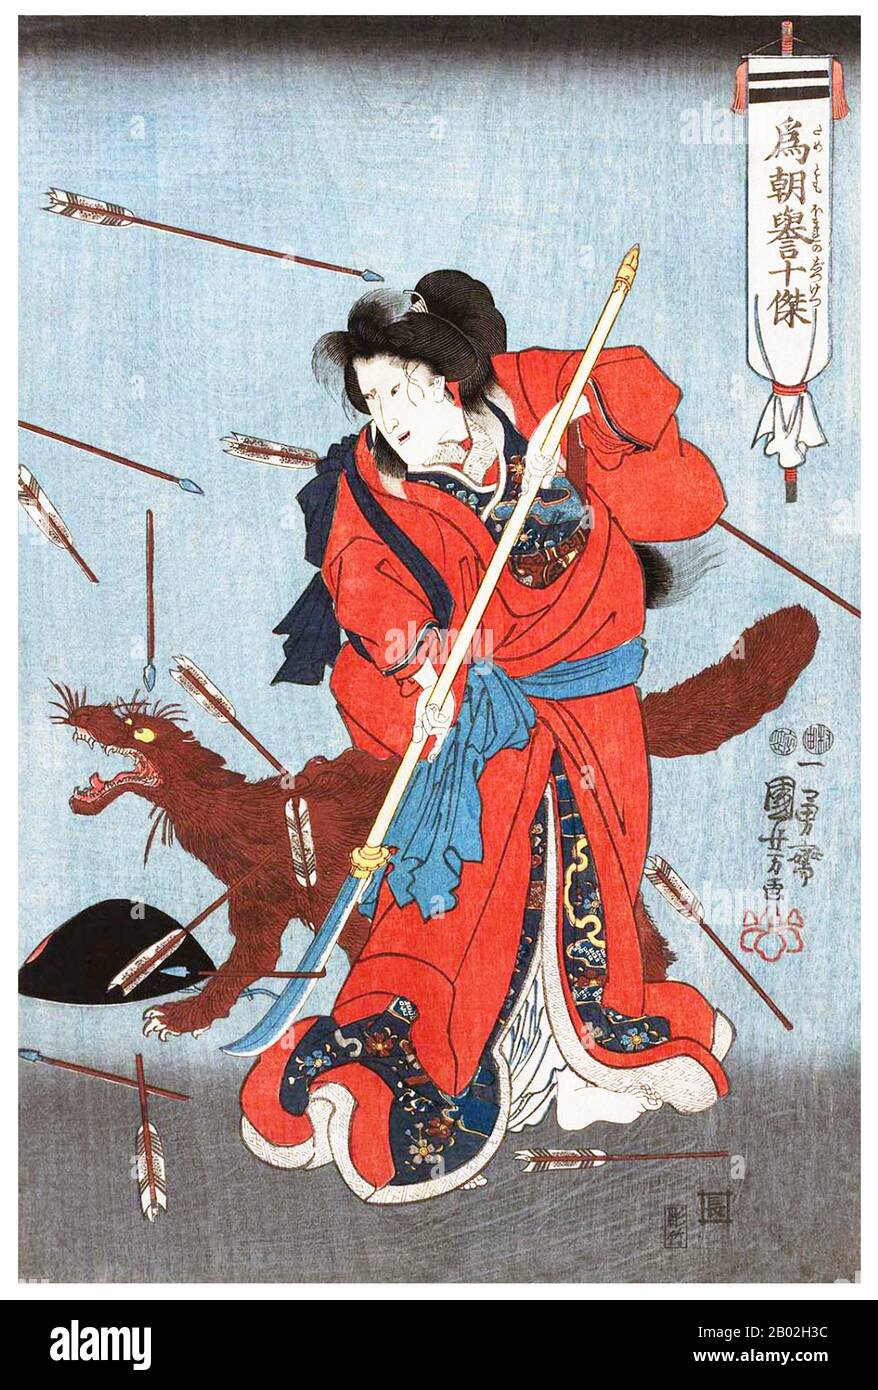 Onna-Bugeisha oder weibliche Samurai bildeten einen kleinen Abschnitt der traditionellen japanischen Oberschicht. Viele Ehefrauen, Witwen, Töchter und Rebellen beantworteten den Aufruf zur Pflicht, indem sie sich im Kampf engagierten, im Allgemeinen neben Samurai-Männern. Sie waren Mitglieder der Bushi (Samurai) Klasse im feudalen Japan und wurden in der Anwendung von Waffen zum Schutz ihres Haushalts, ihrer Familie und ihrer Ehre in Zeiten des Krieges ausgebildet. Sie stellten auch eine Abweichung von der traditionellen Rolle der "Hausfrau" der Japanerin dar. Der Begriff besteht aus dem weiblichen Wort onna (Frau) und dem maskulinen Bugeisha (Krieger) und erzeugt einen Missnomen, der CA Stockfoto